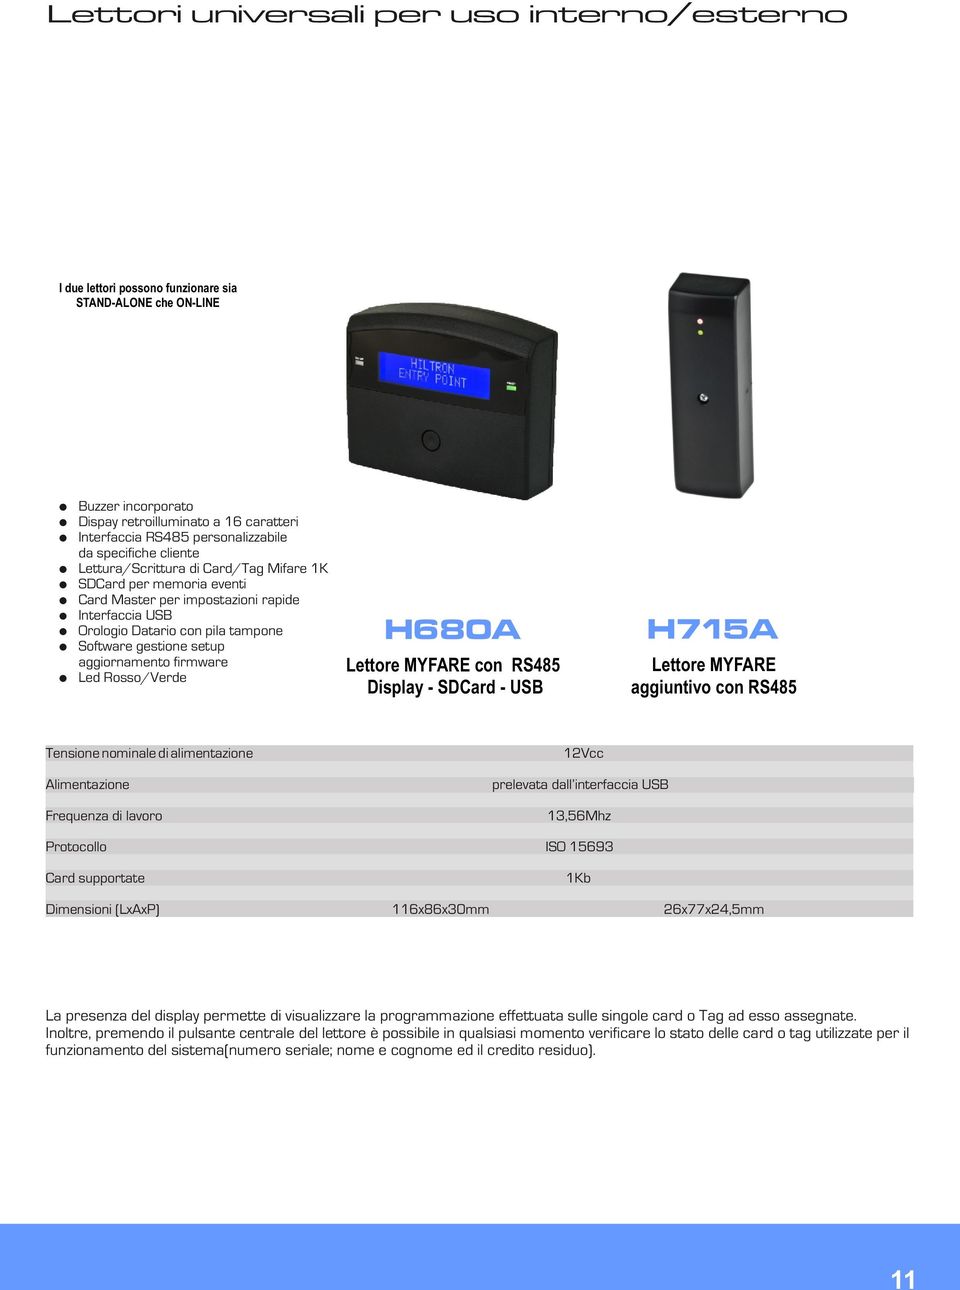 aggiornamento firmware Led Rosso/Verde H680A Lettore MYFARE con Display - SDCard - USB H715A Lettore MYFARE aggiuntivo con Tensione nominale di alimentazione Alimentazione Frequenza di lavoro 12Vcc